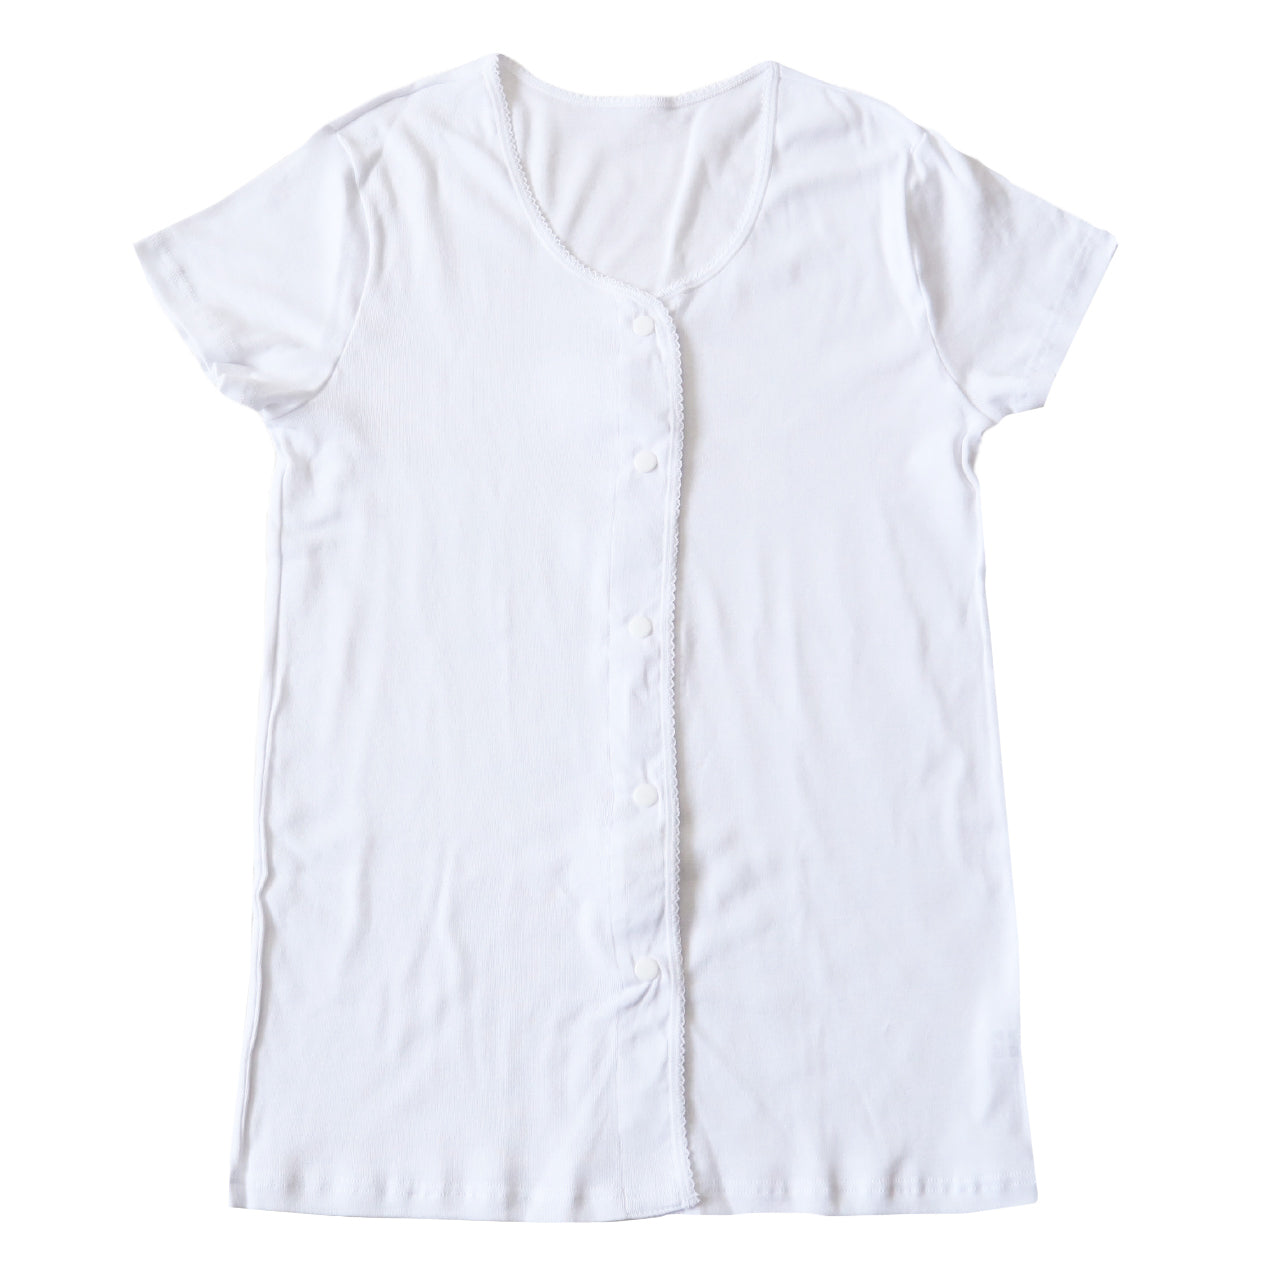 介護 前開き 肌着 シャツ 半袖 レディース 女性 綿100% プラスチック